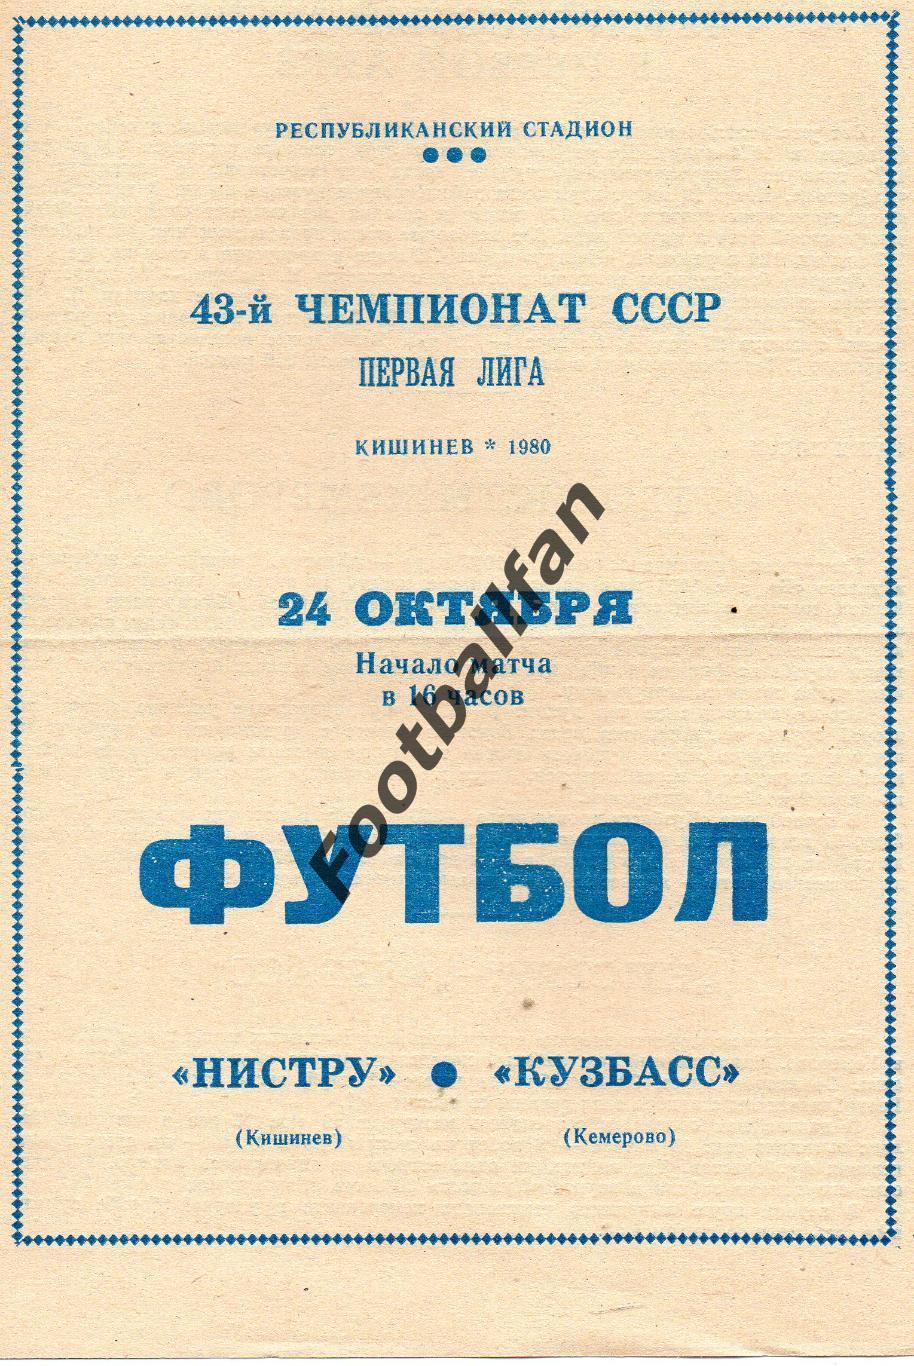 Нистру Кишинев - Кузбасс Кемерово 24.10.1980